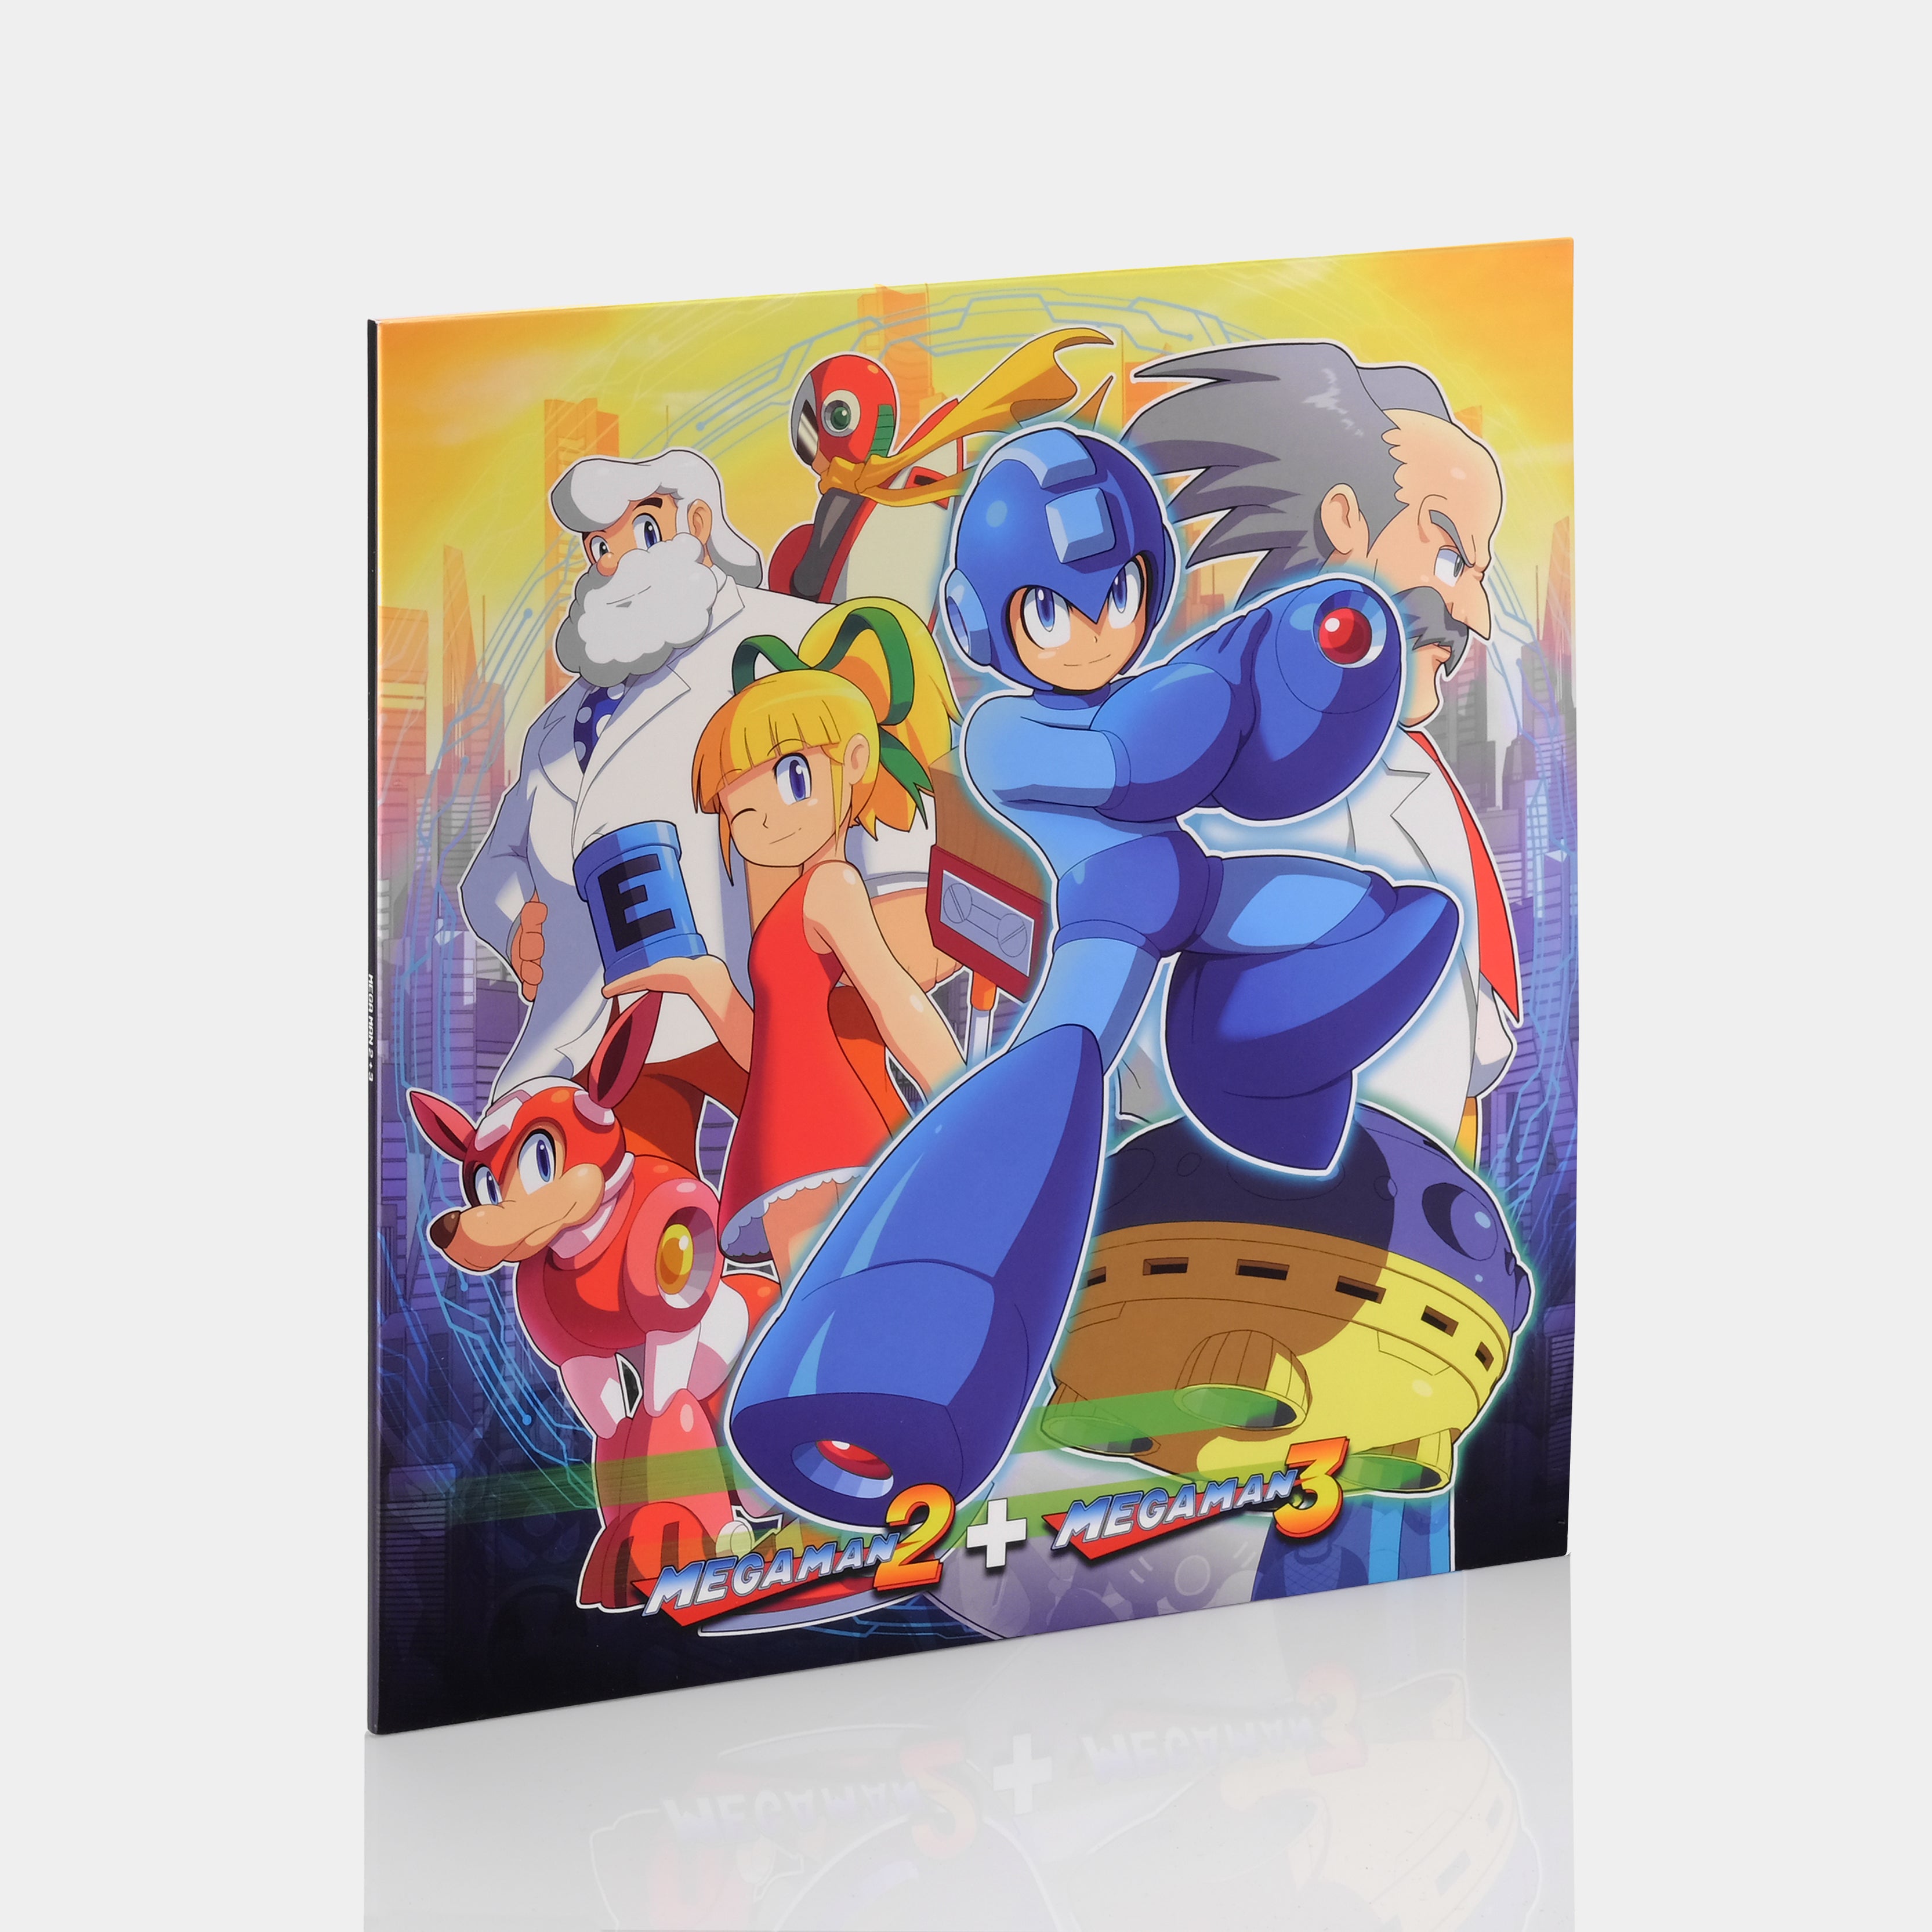 Capcom Sound Team - Mega Man 2 + Mega Man 3 LP Vinyl Record